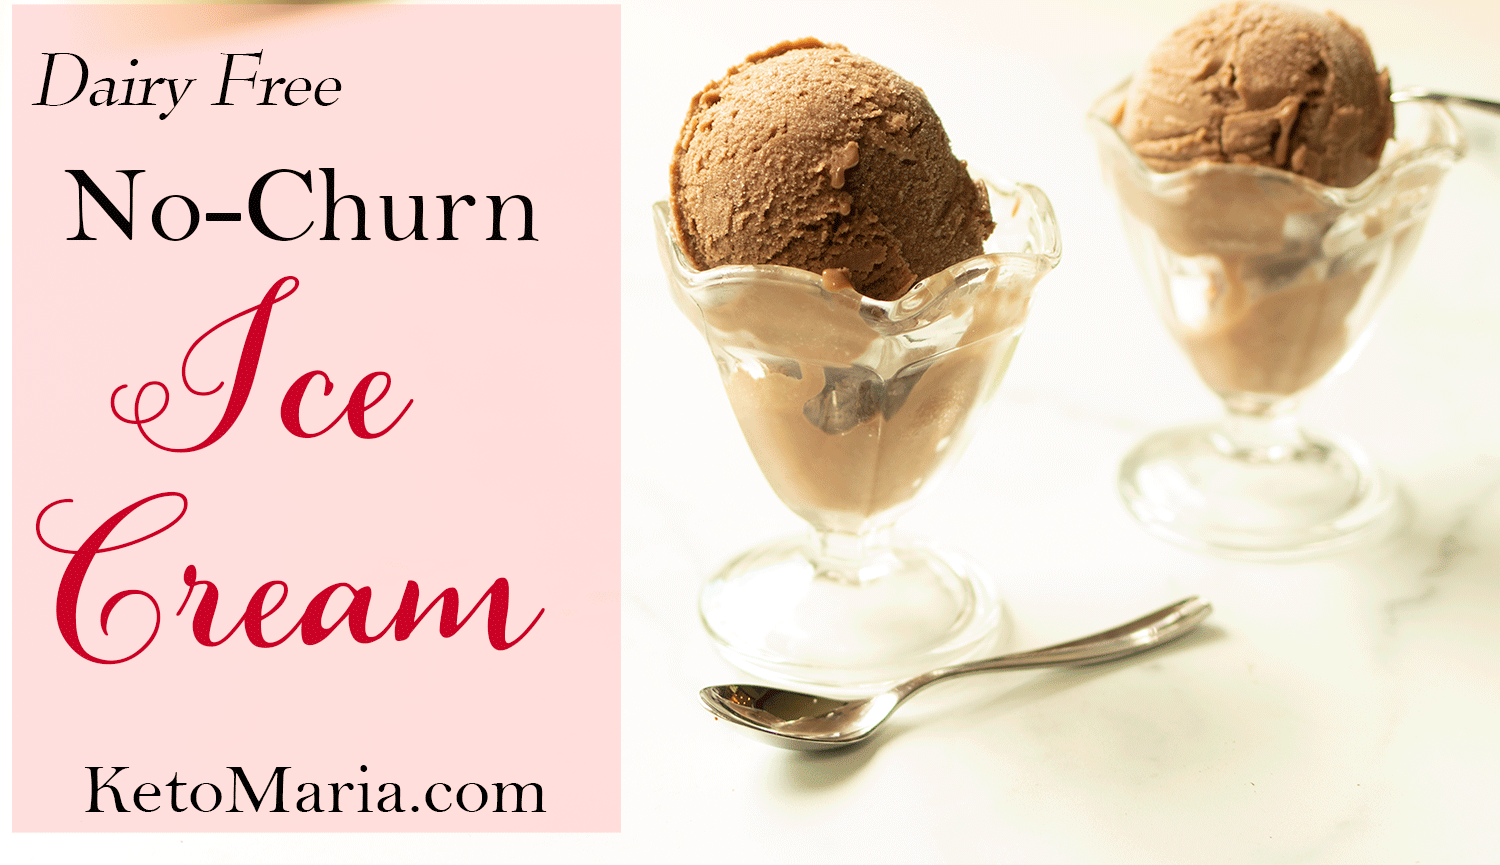 Dairy Free No-Churn Ice Cream